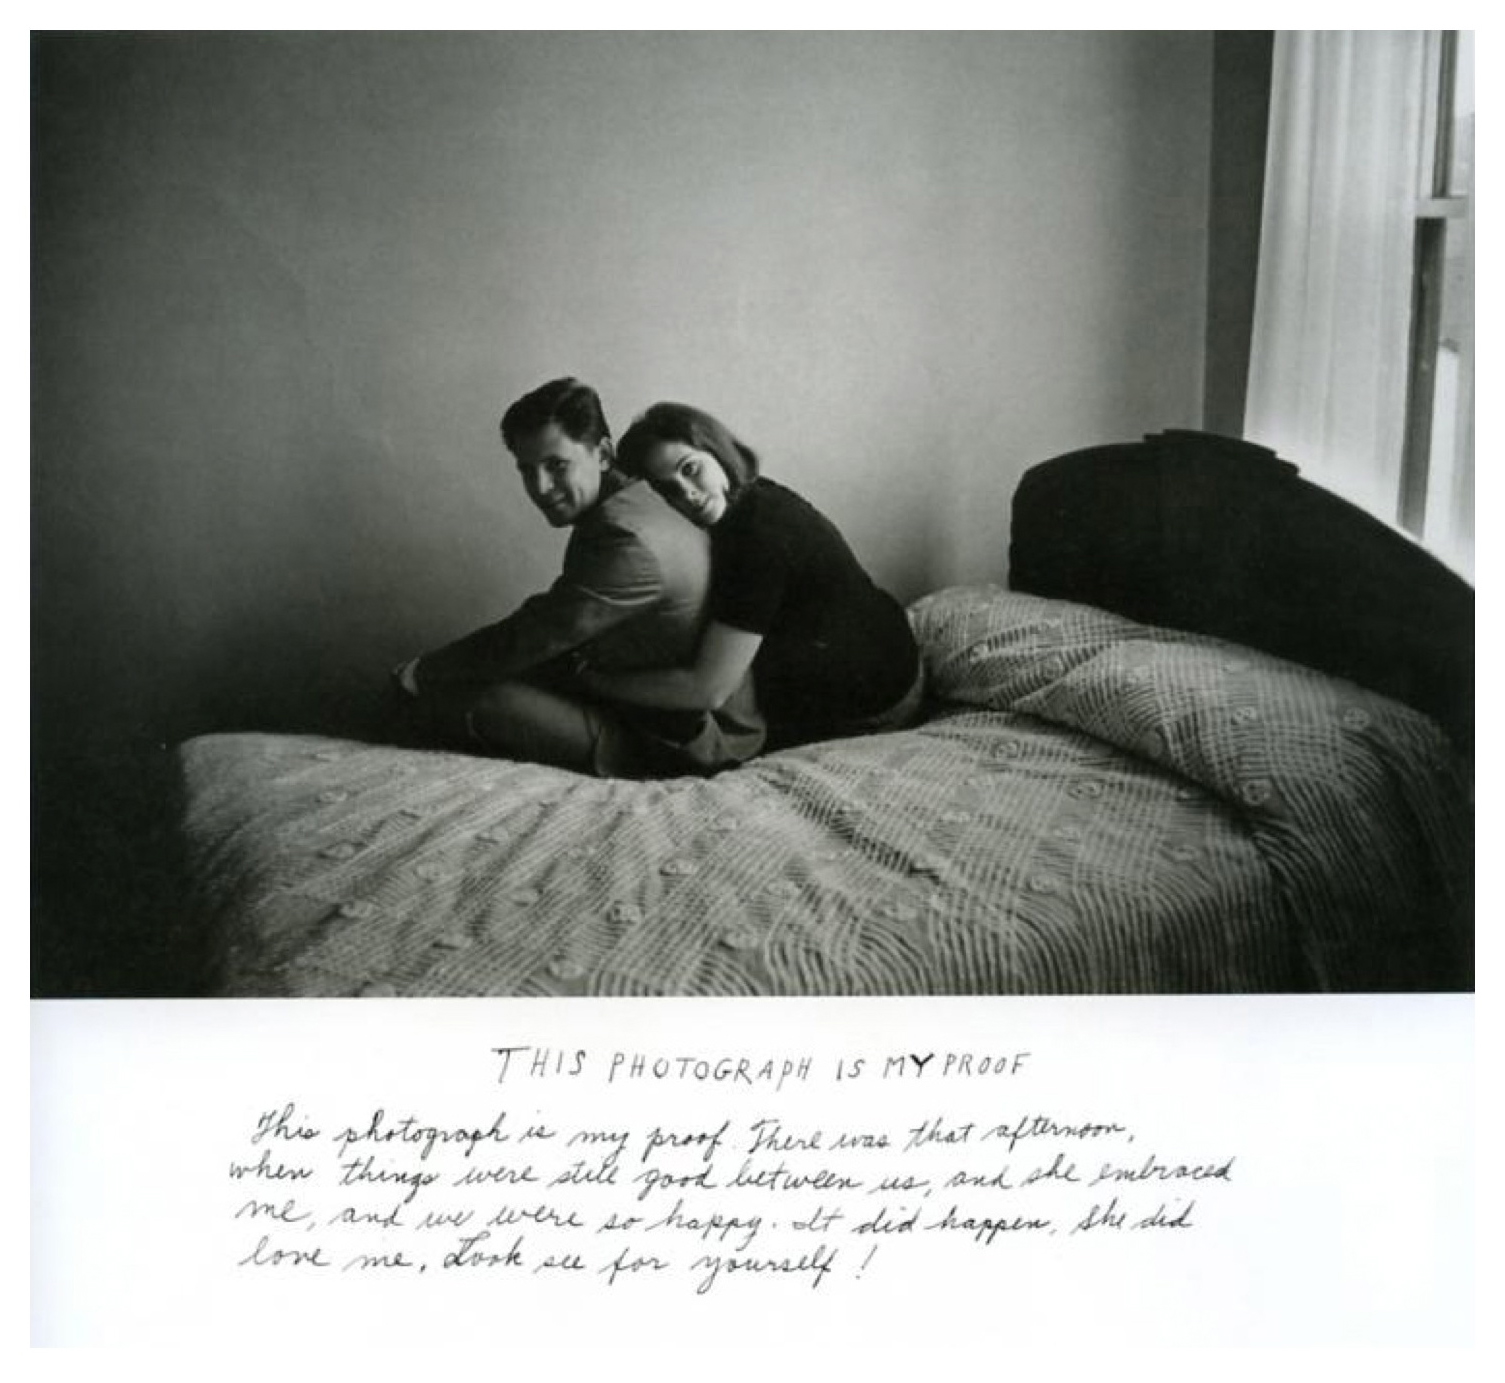 Duane Michals, 'This photograph is my proof' (1974) / Esta fotografía es mi prueba (1974)